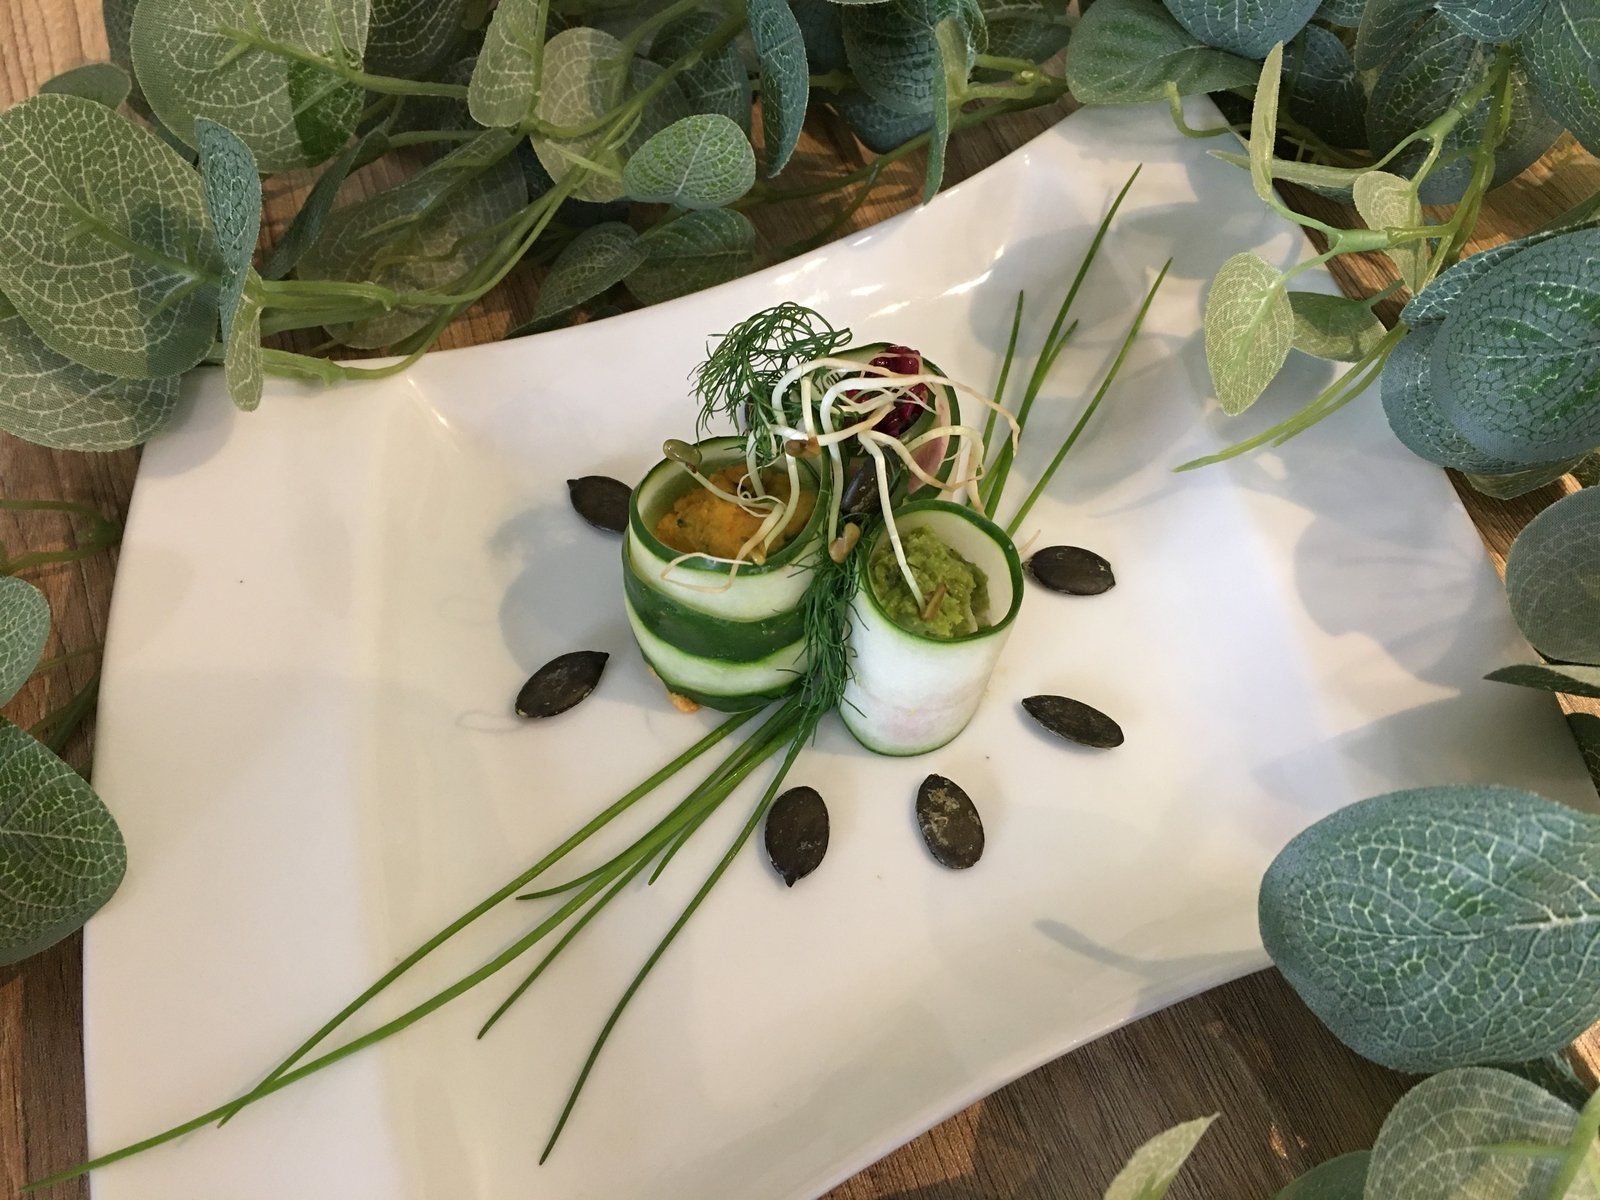 présentation de légumes verts dans une assiette blanche